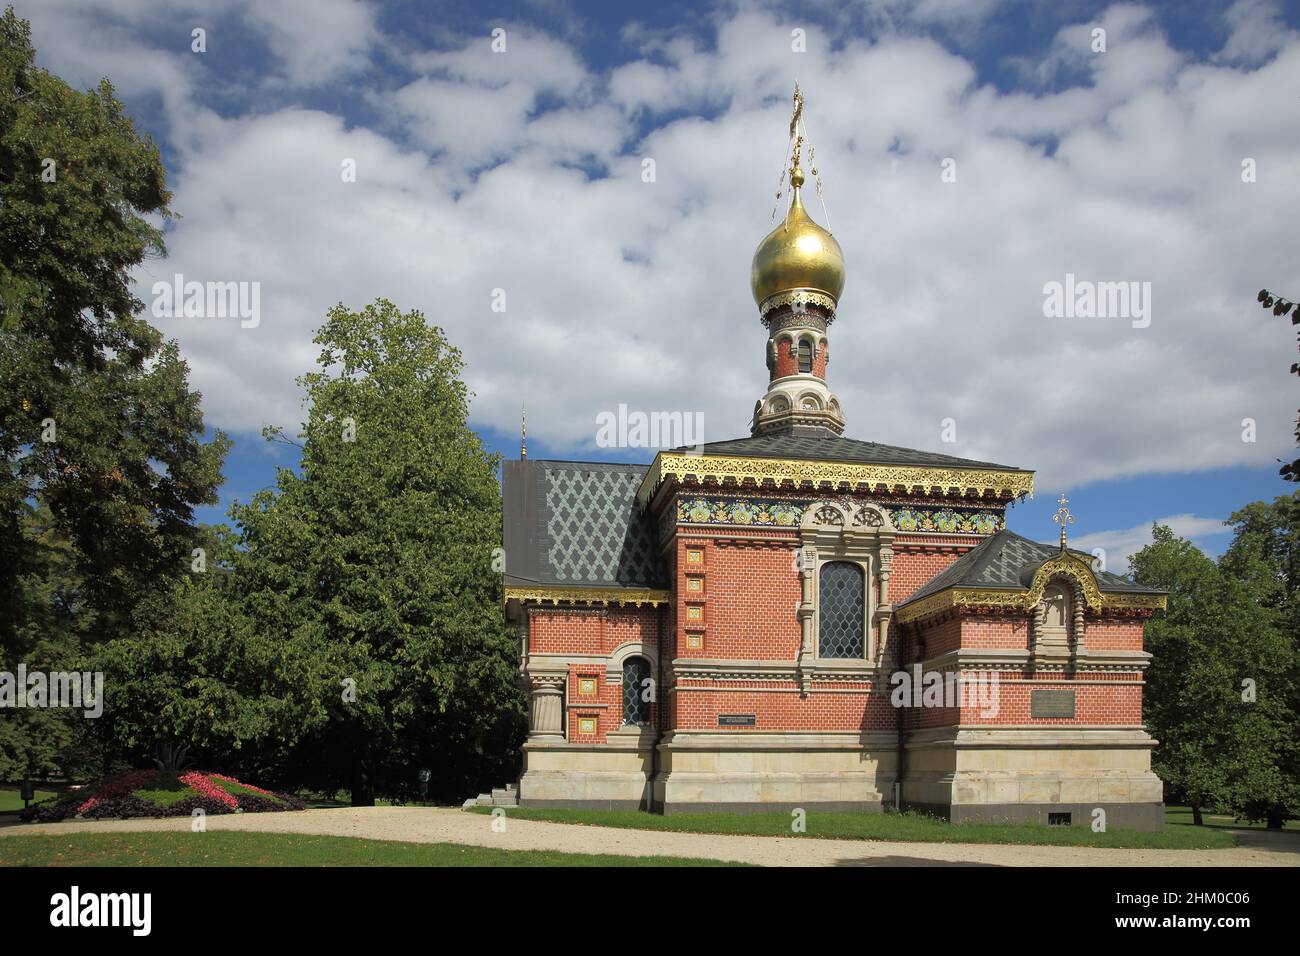 Russische orthodoxe Kirche im Kupark in Bad Homburg, Hessen, Deutschland Stockfoto